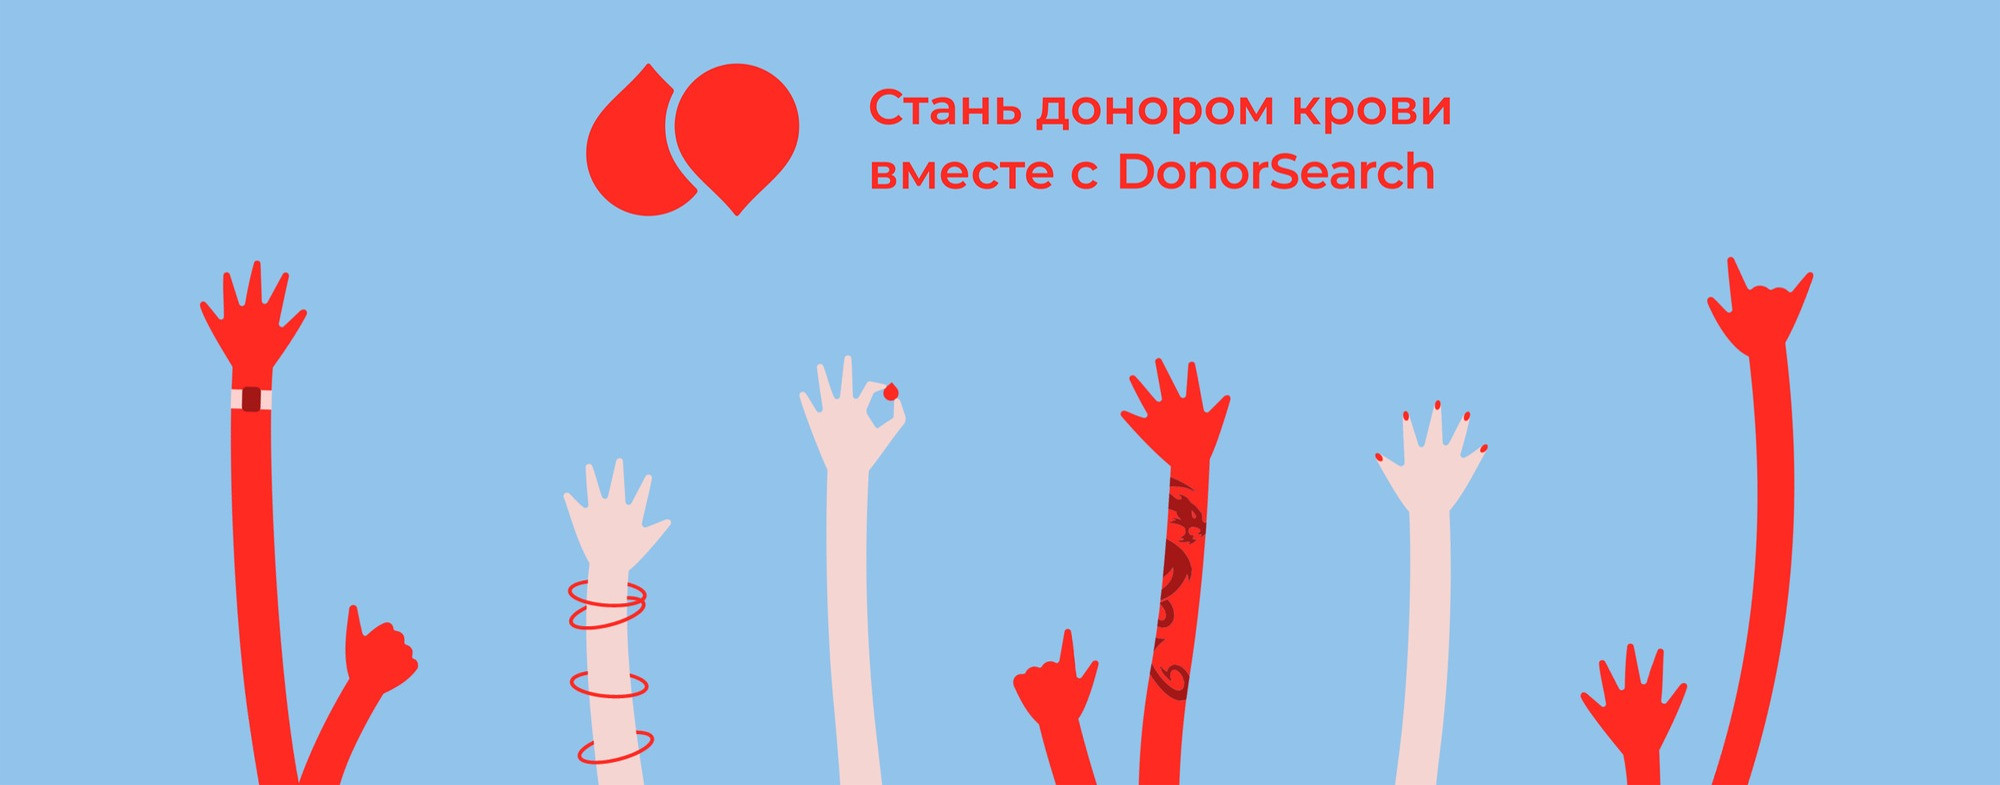 Адель Сунгатуллин: В честь 40 донации ко дню рождения DonorSearch